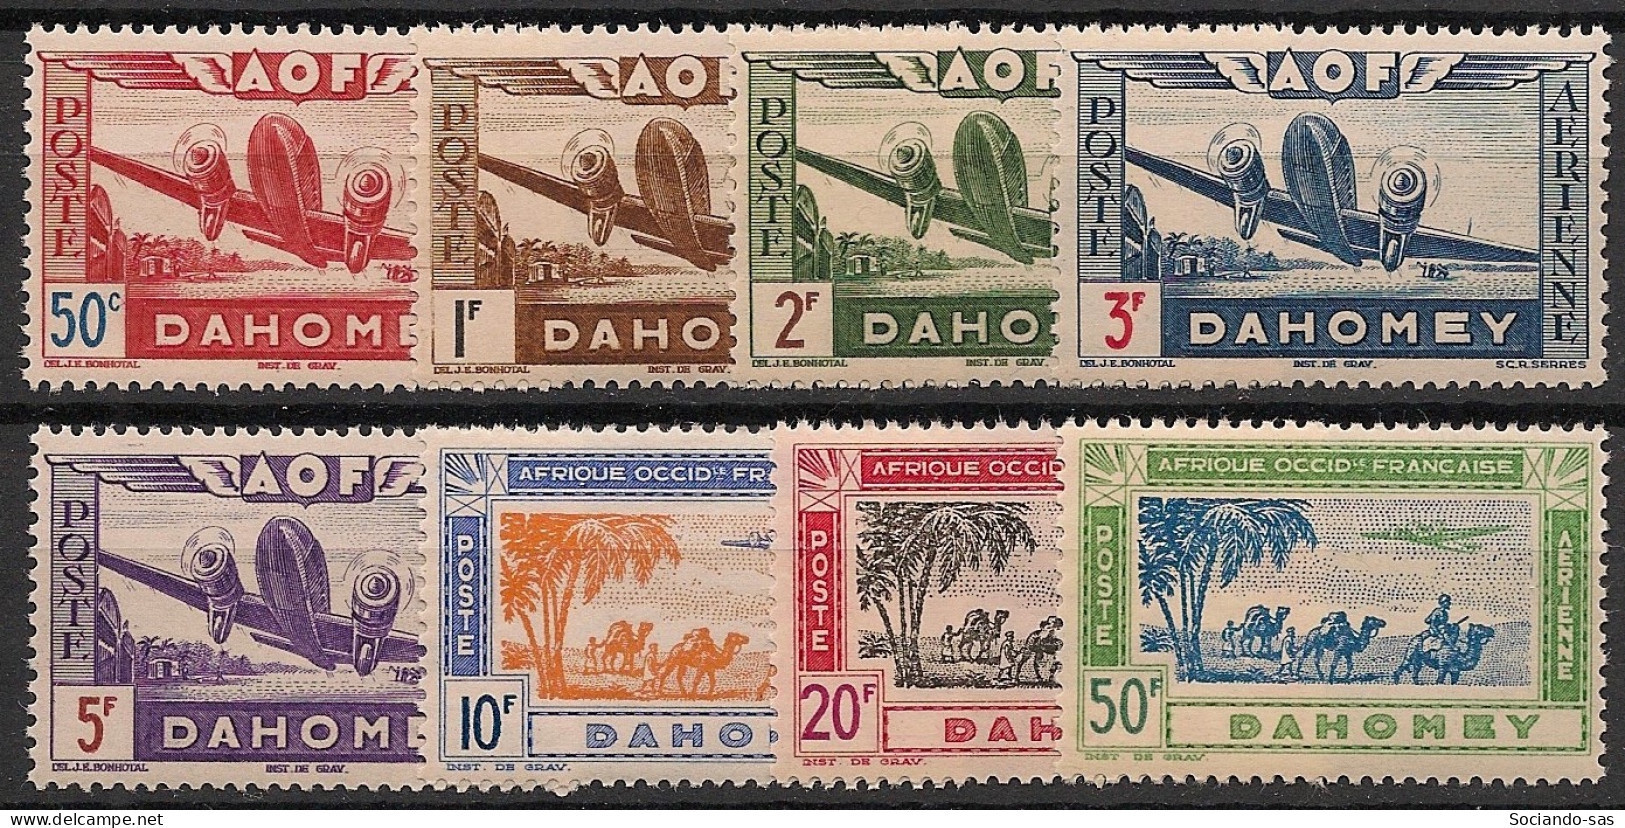 DAHOMEY - 1942 - Poste Aérienne PA N°YT. 10 à 17 - Série Complète - Neuf * / MH VF - Unused Stamps